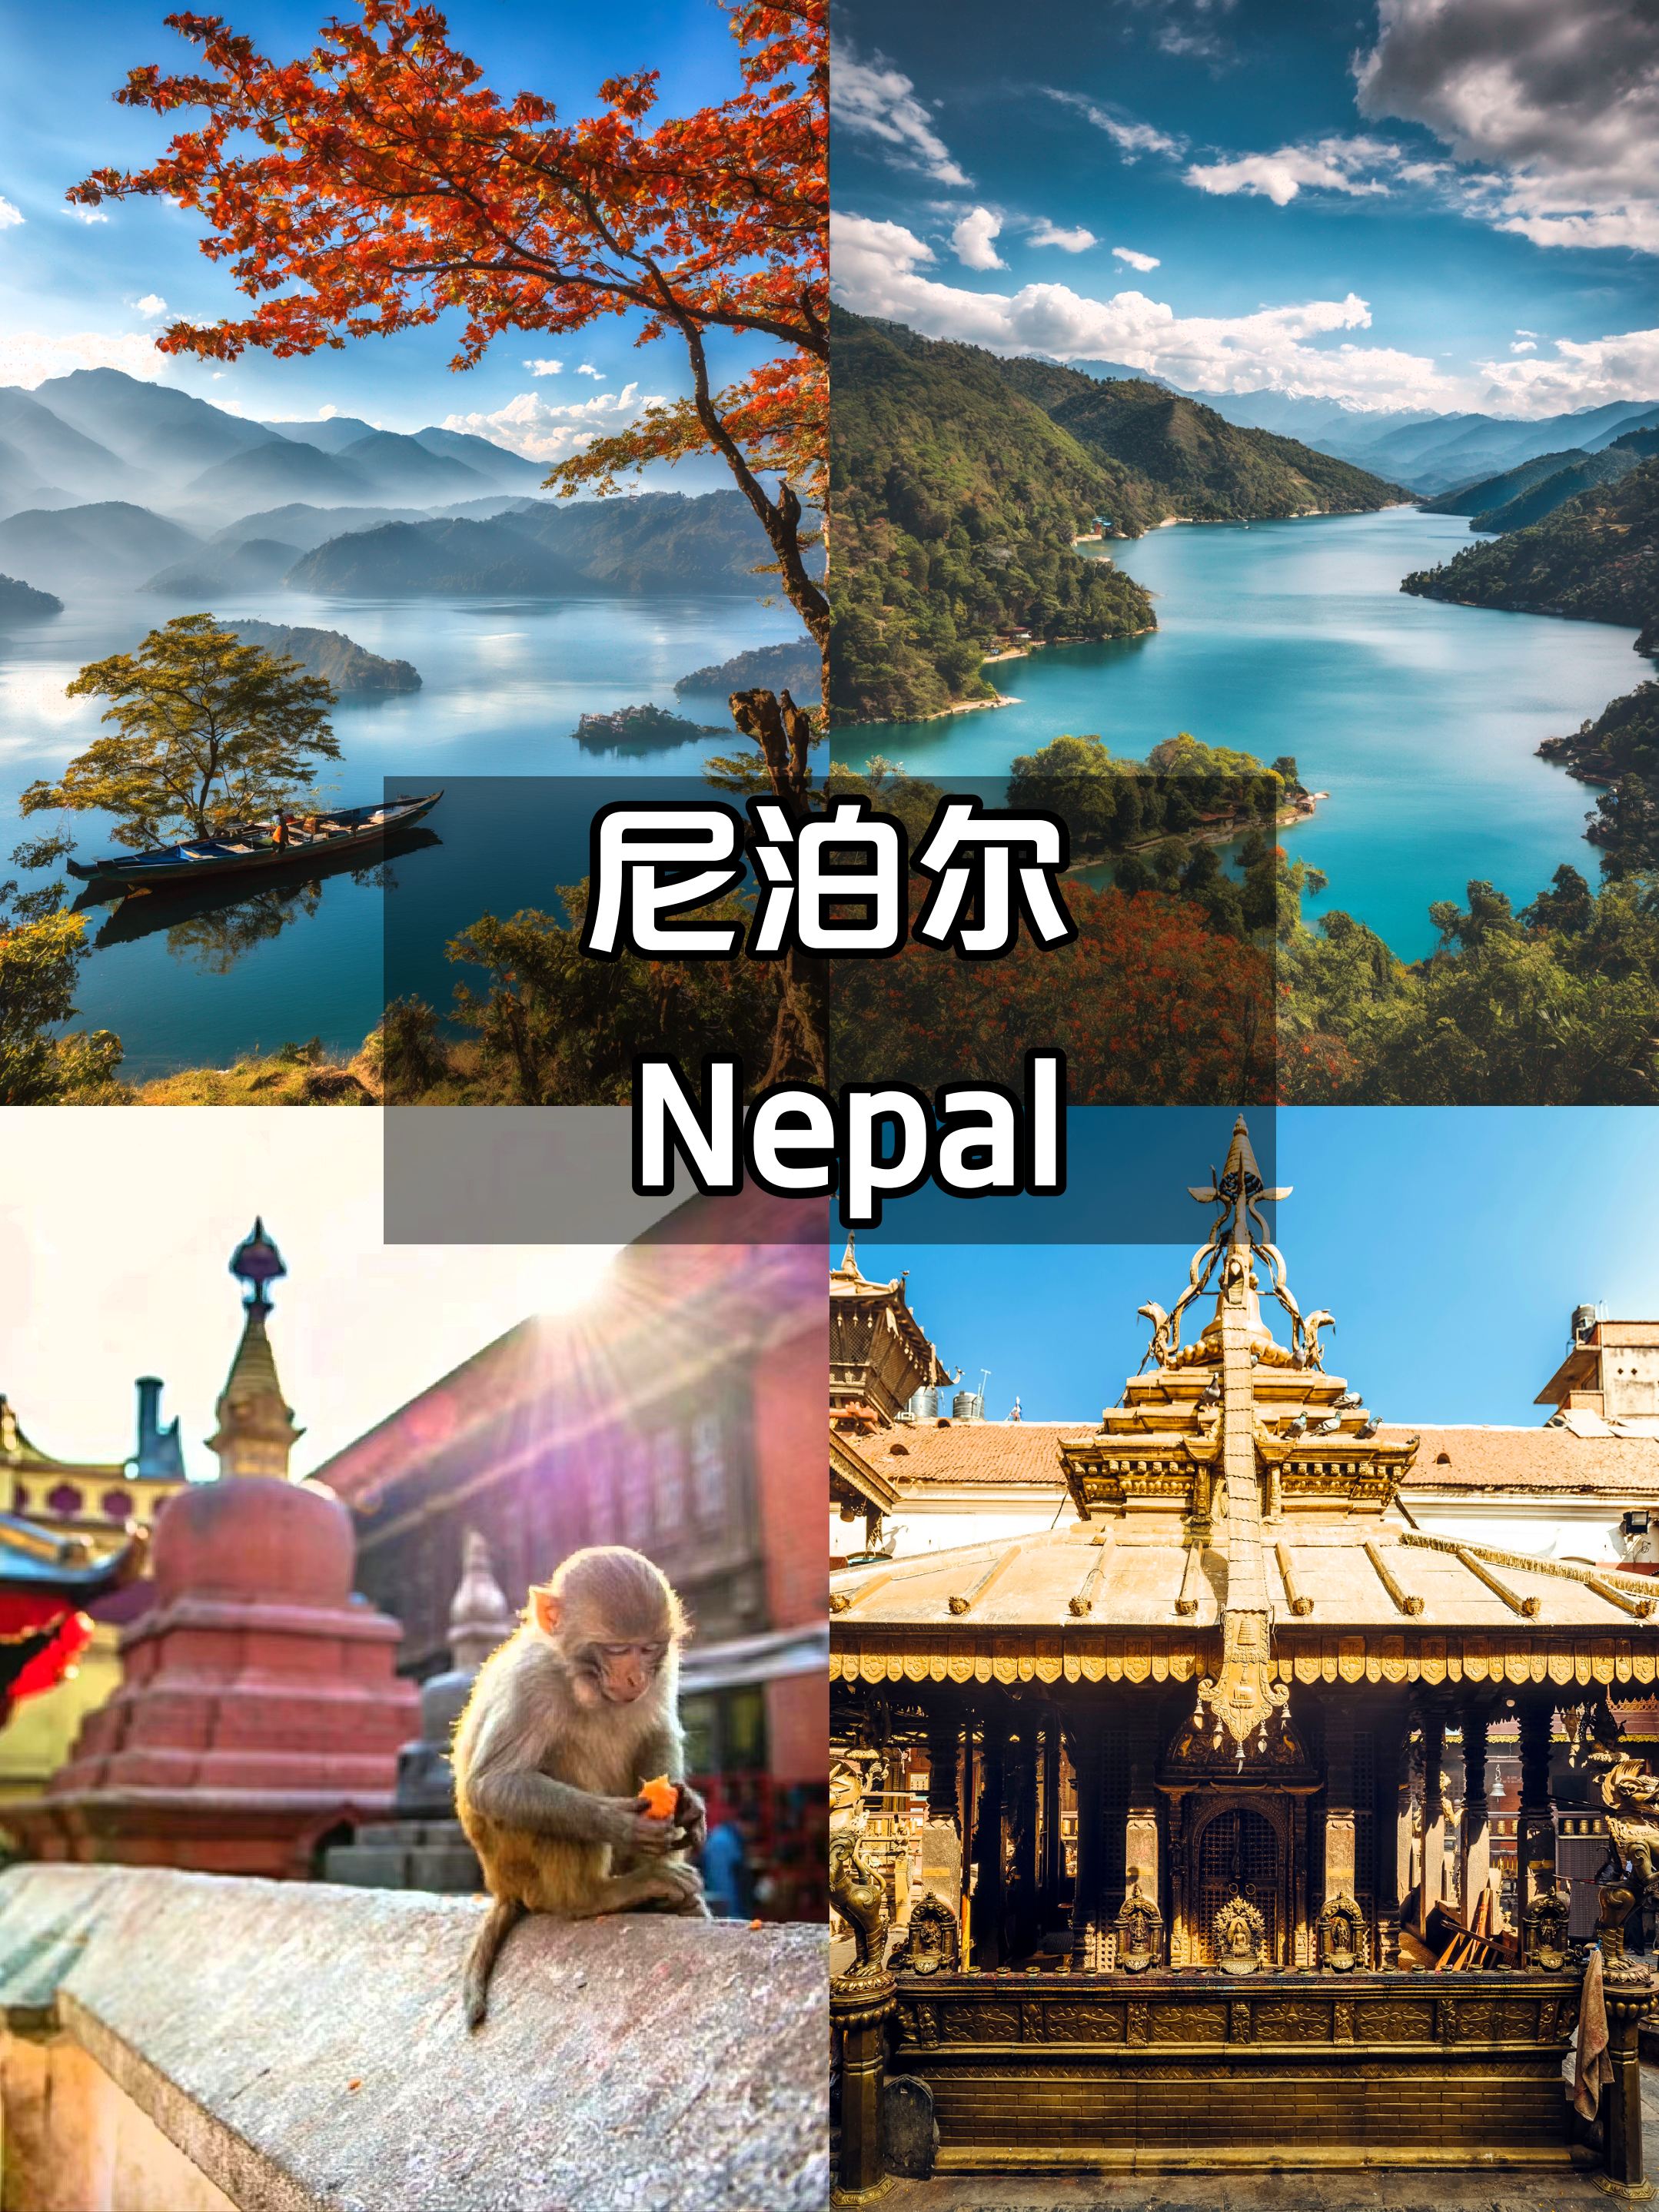 尼泊尔旅行🎒回来就想再去😭真香了❗